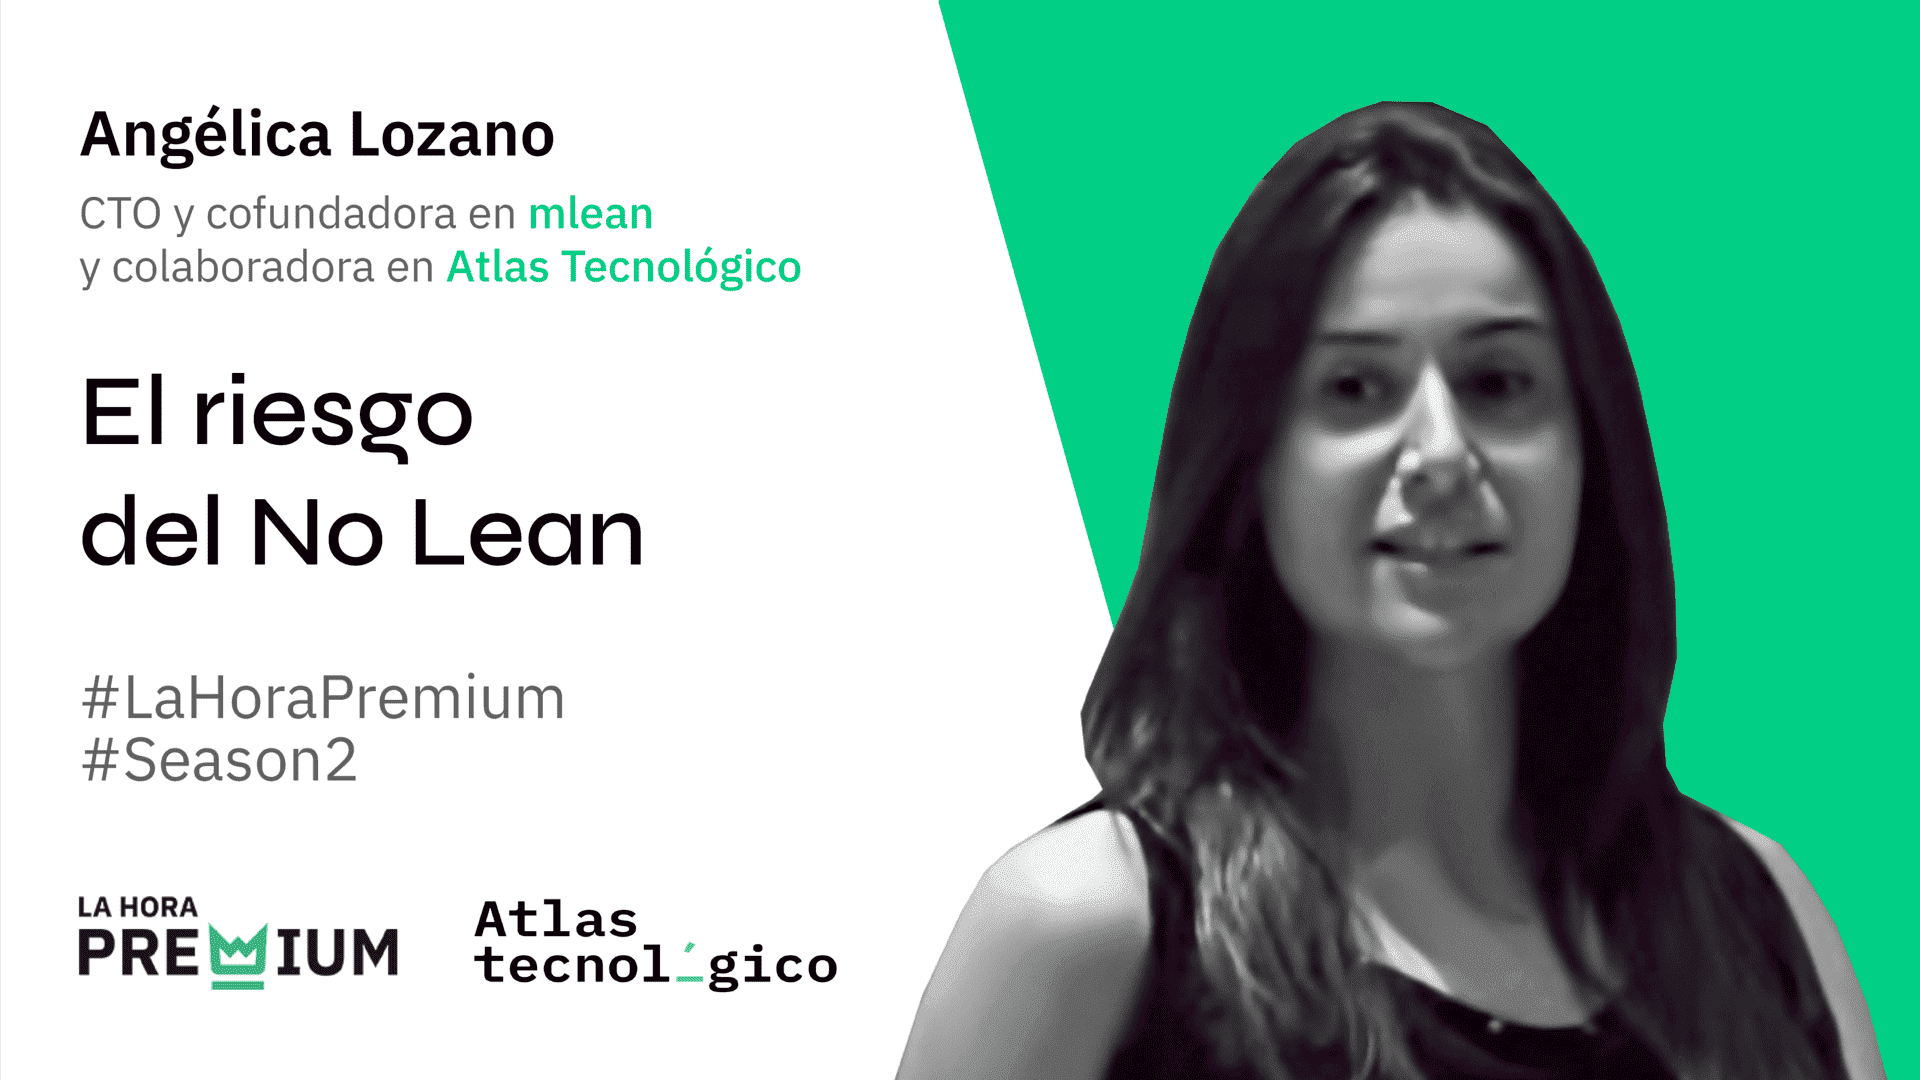 Angélica Lozano hablará del riesgo del No Lean en la Hora Premium